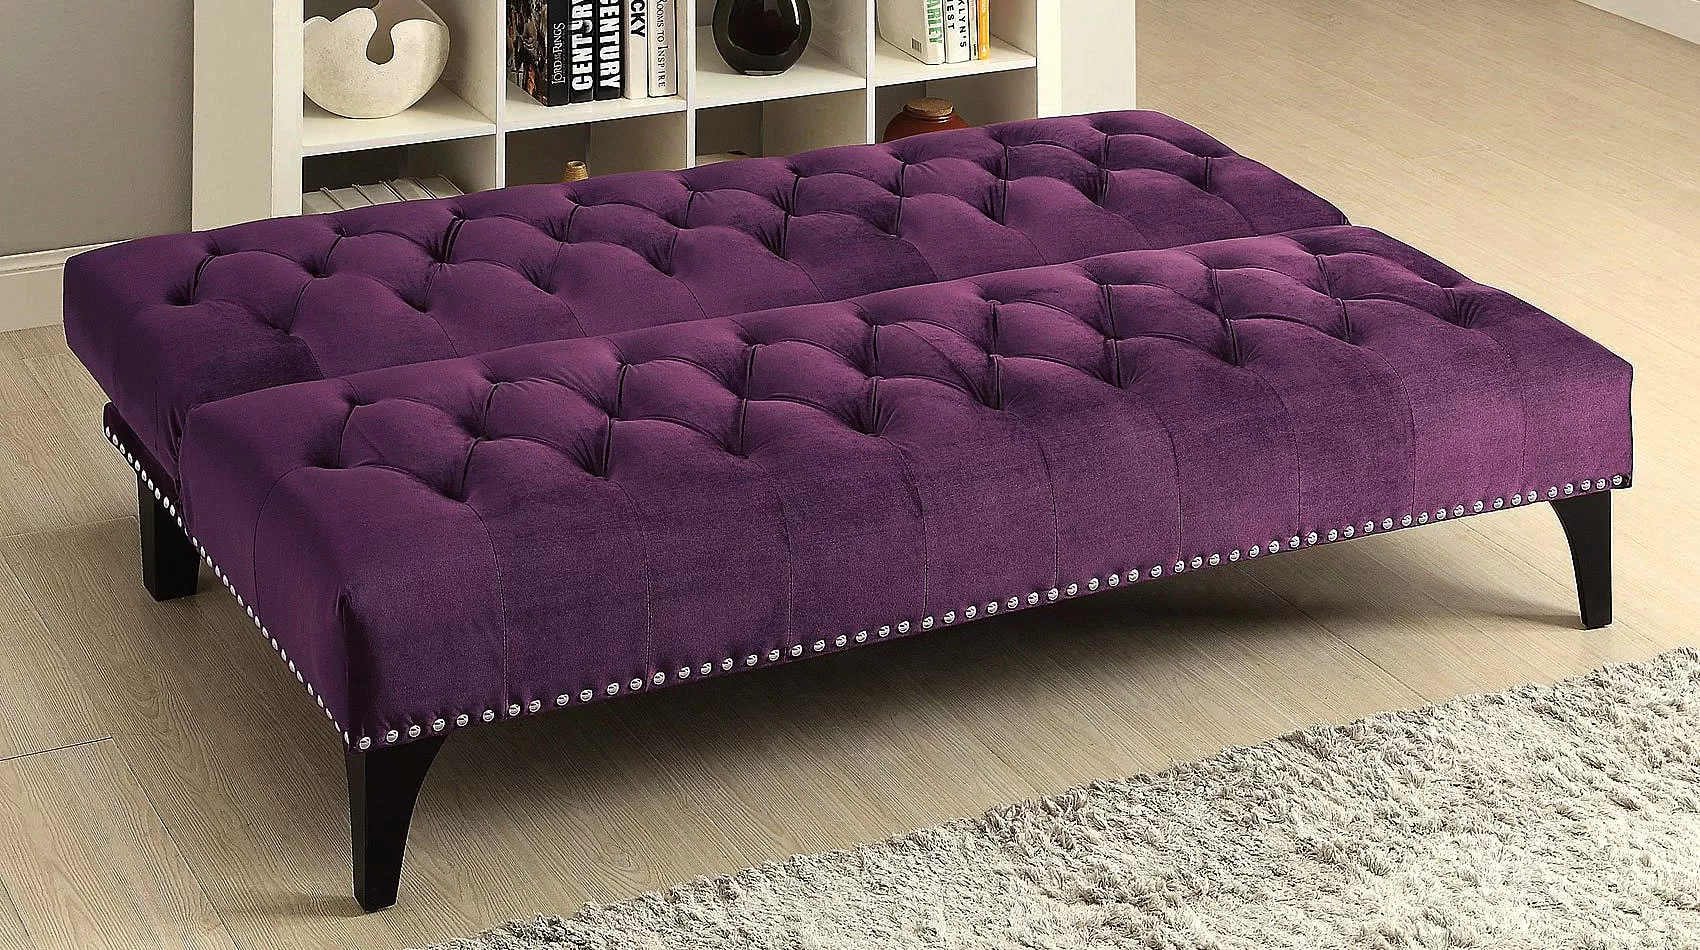 Purple Sofa Sleeper | Purple Sofa Bed | Purple Couch Sleeper | Purple Sleeper Sofa